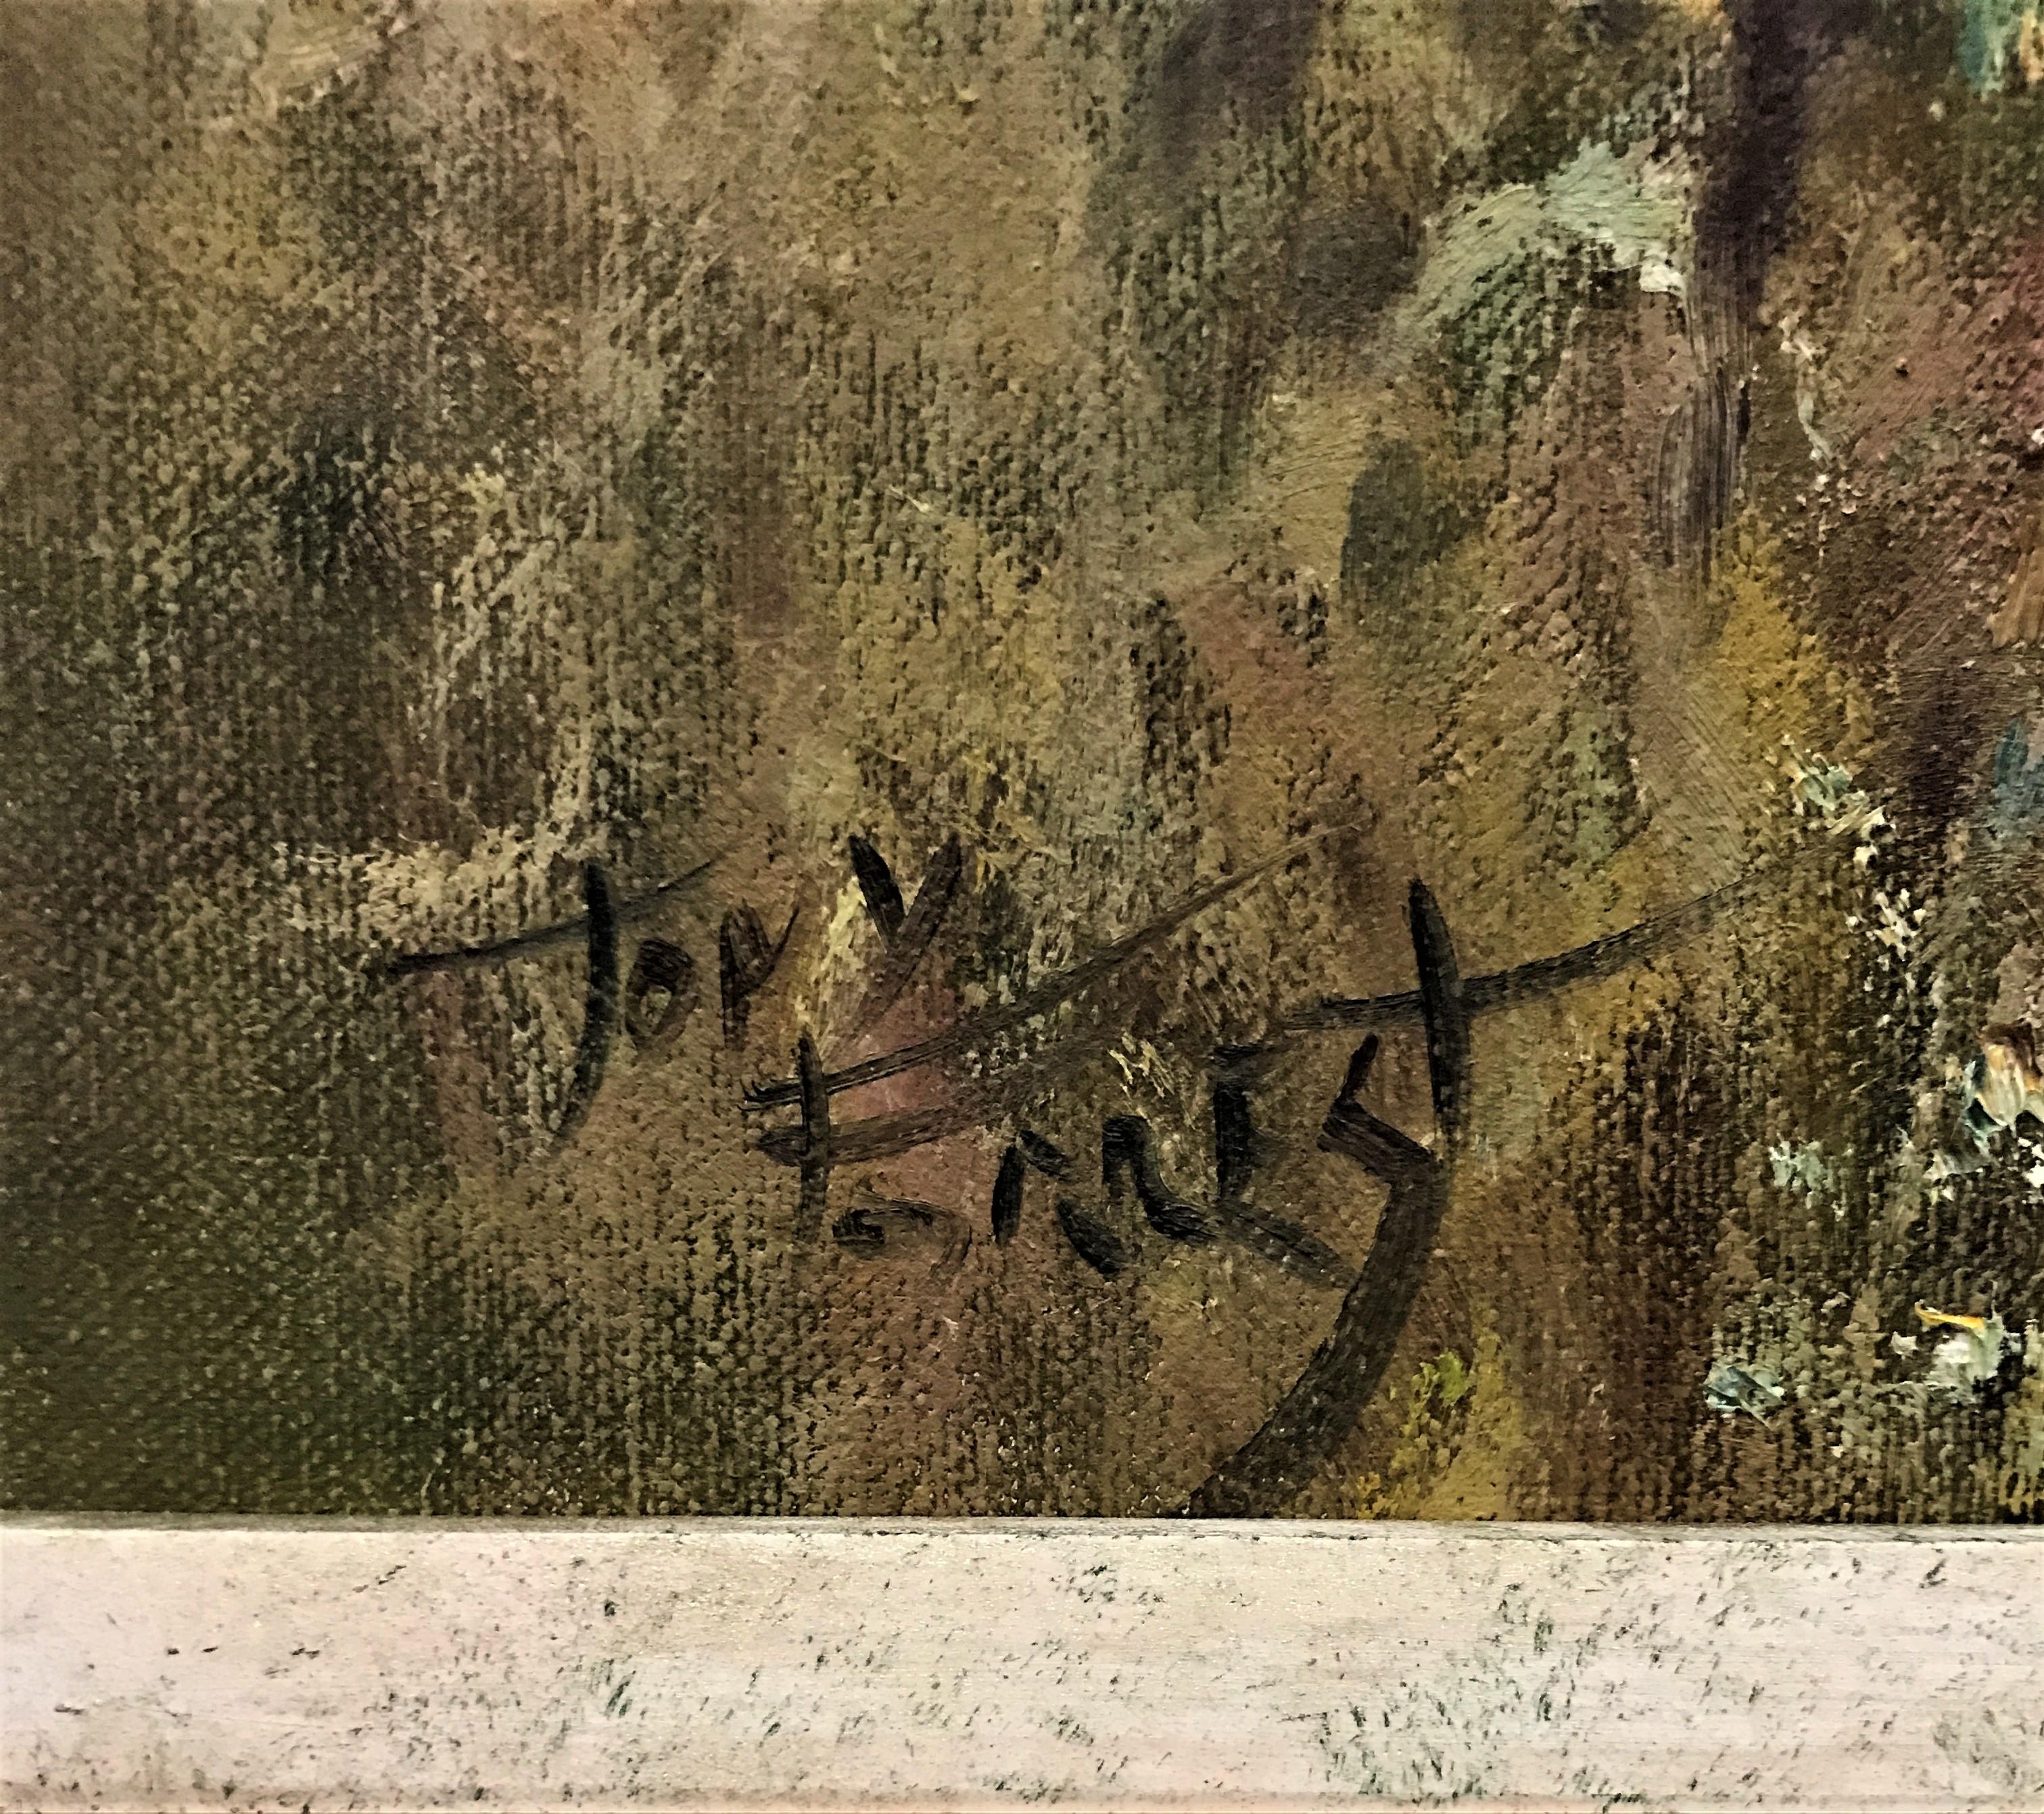 Tigre et cube dans l'herbe, huile sur toile, peintre britannique réaliste du 20e siècle - Réalisme Painting par Tony Forrest